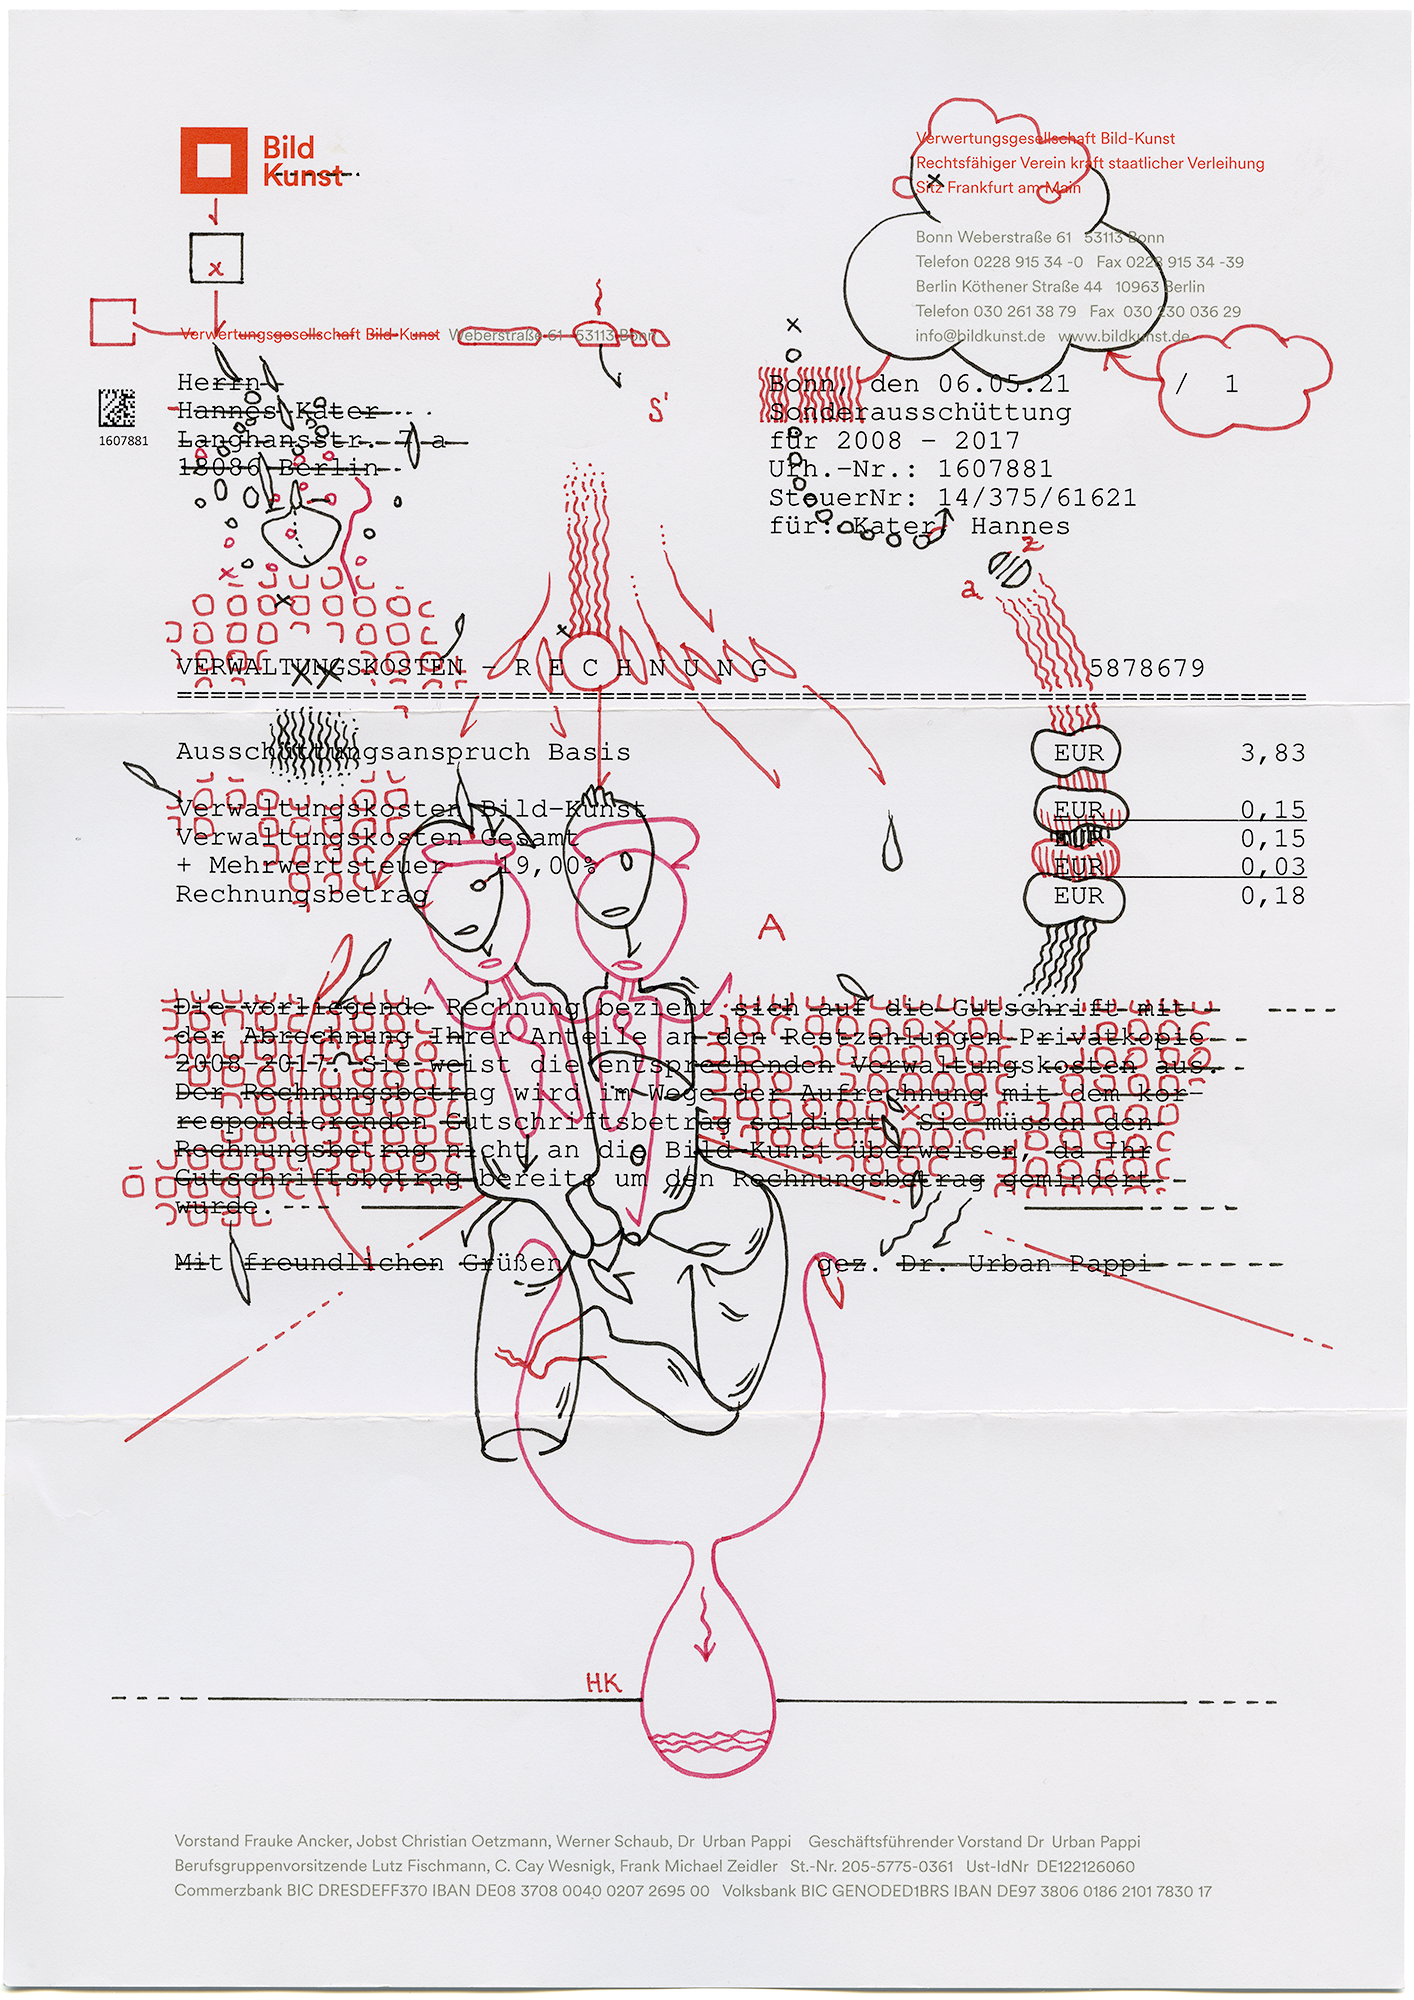 Hannes Kater: Tageszeichnung (Zeichnung/drawing) vom 10.06.2021 (1414 x 2000 Pixel)